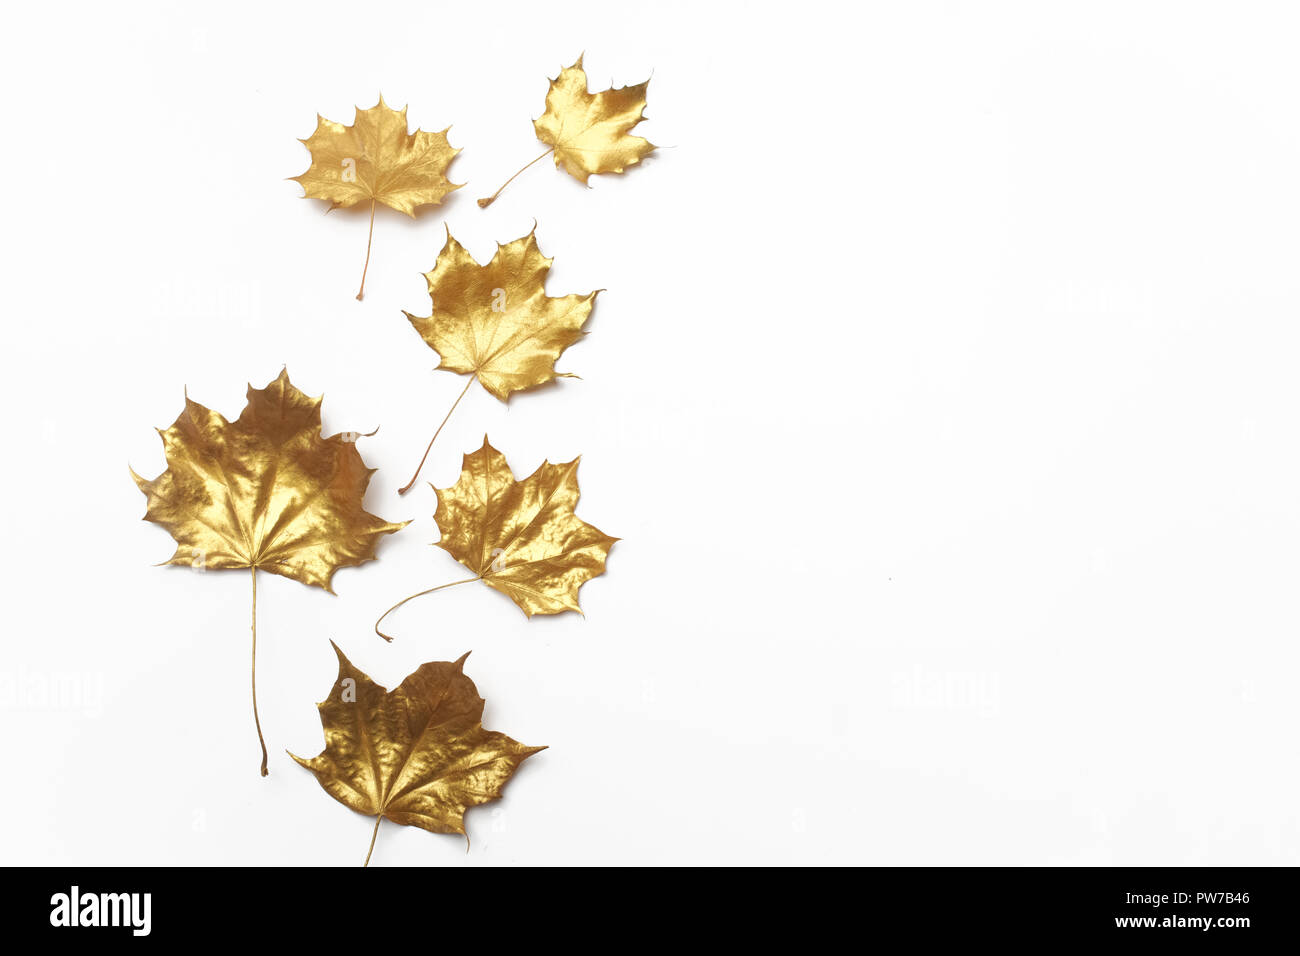 Herbst Komposition. Rahmen aus Herbst goldene Blätter auf hellgrauem Hintergrund. Flach, Ansicht von oben Stockfoto